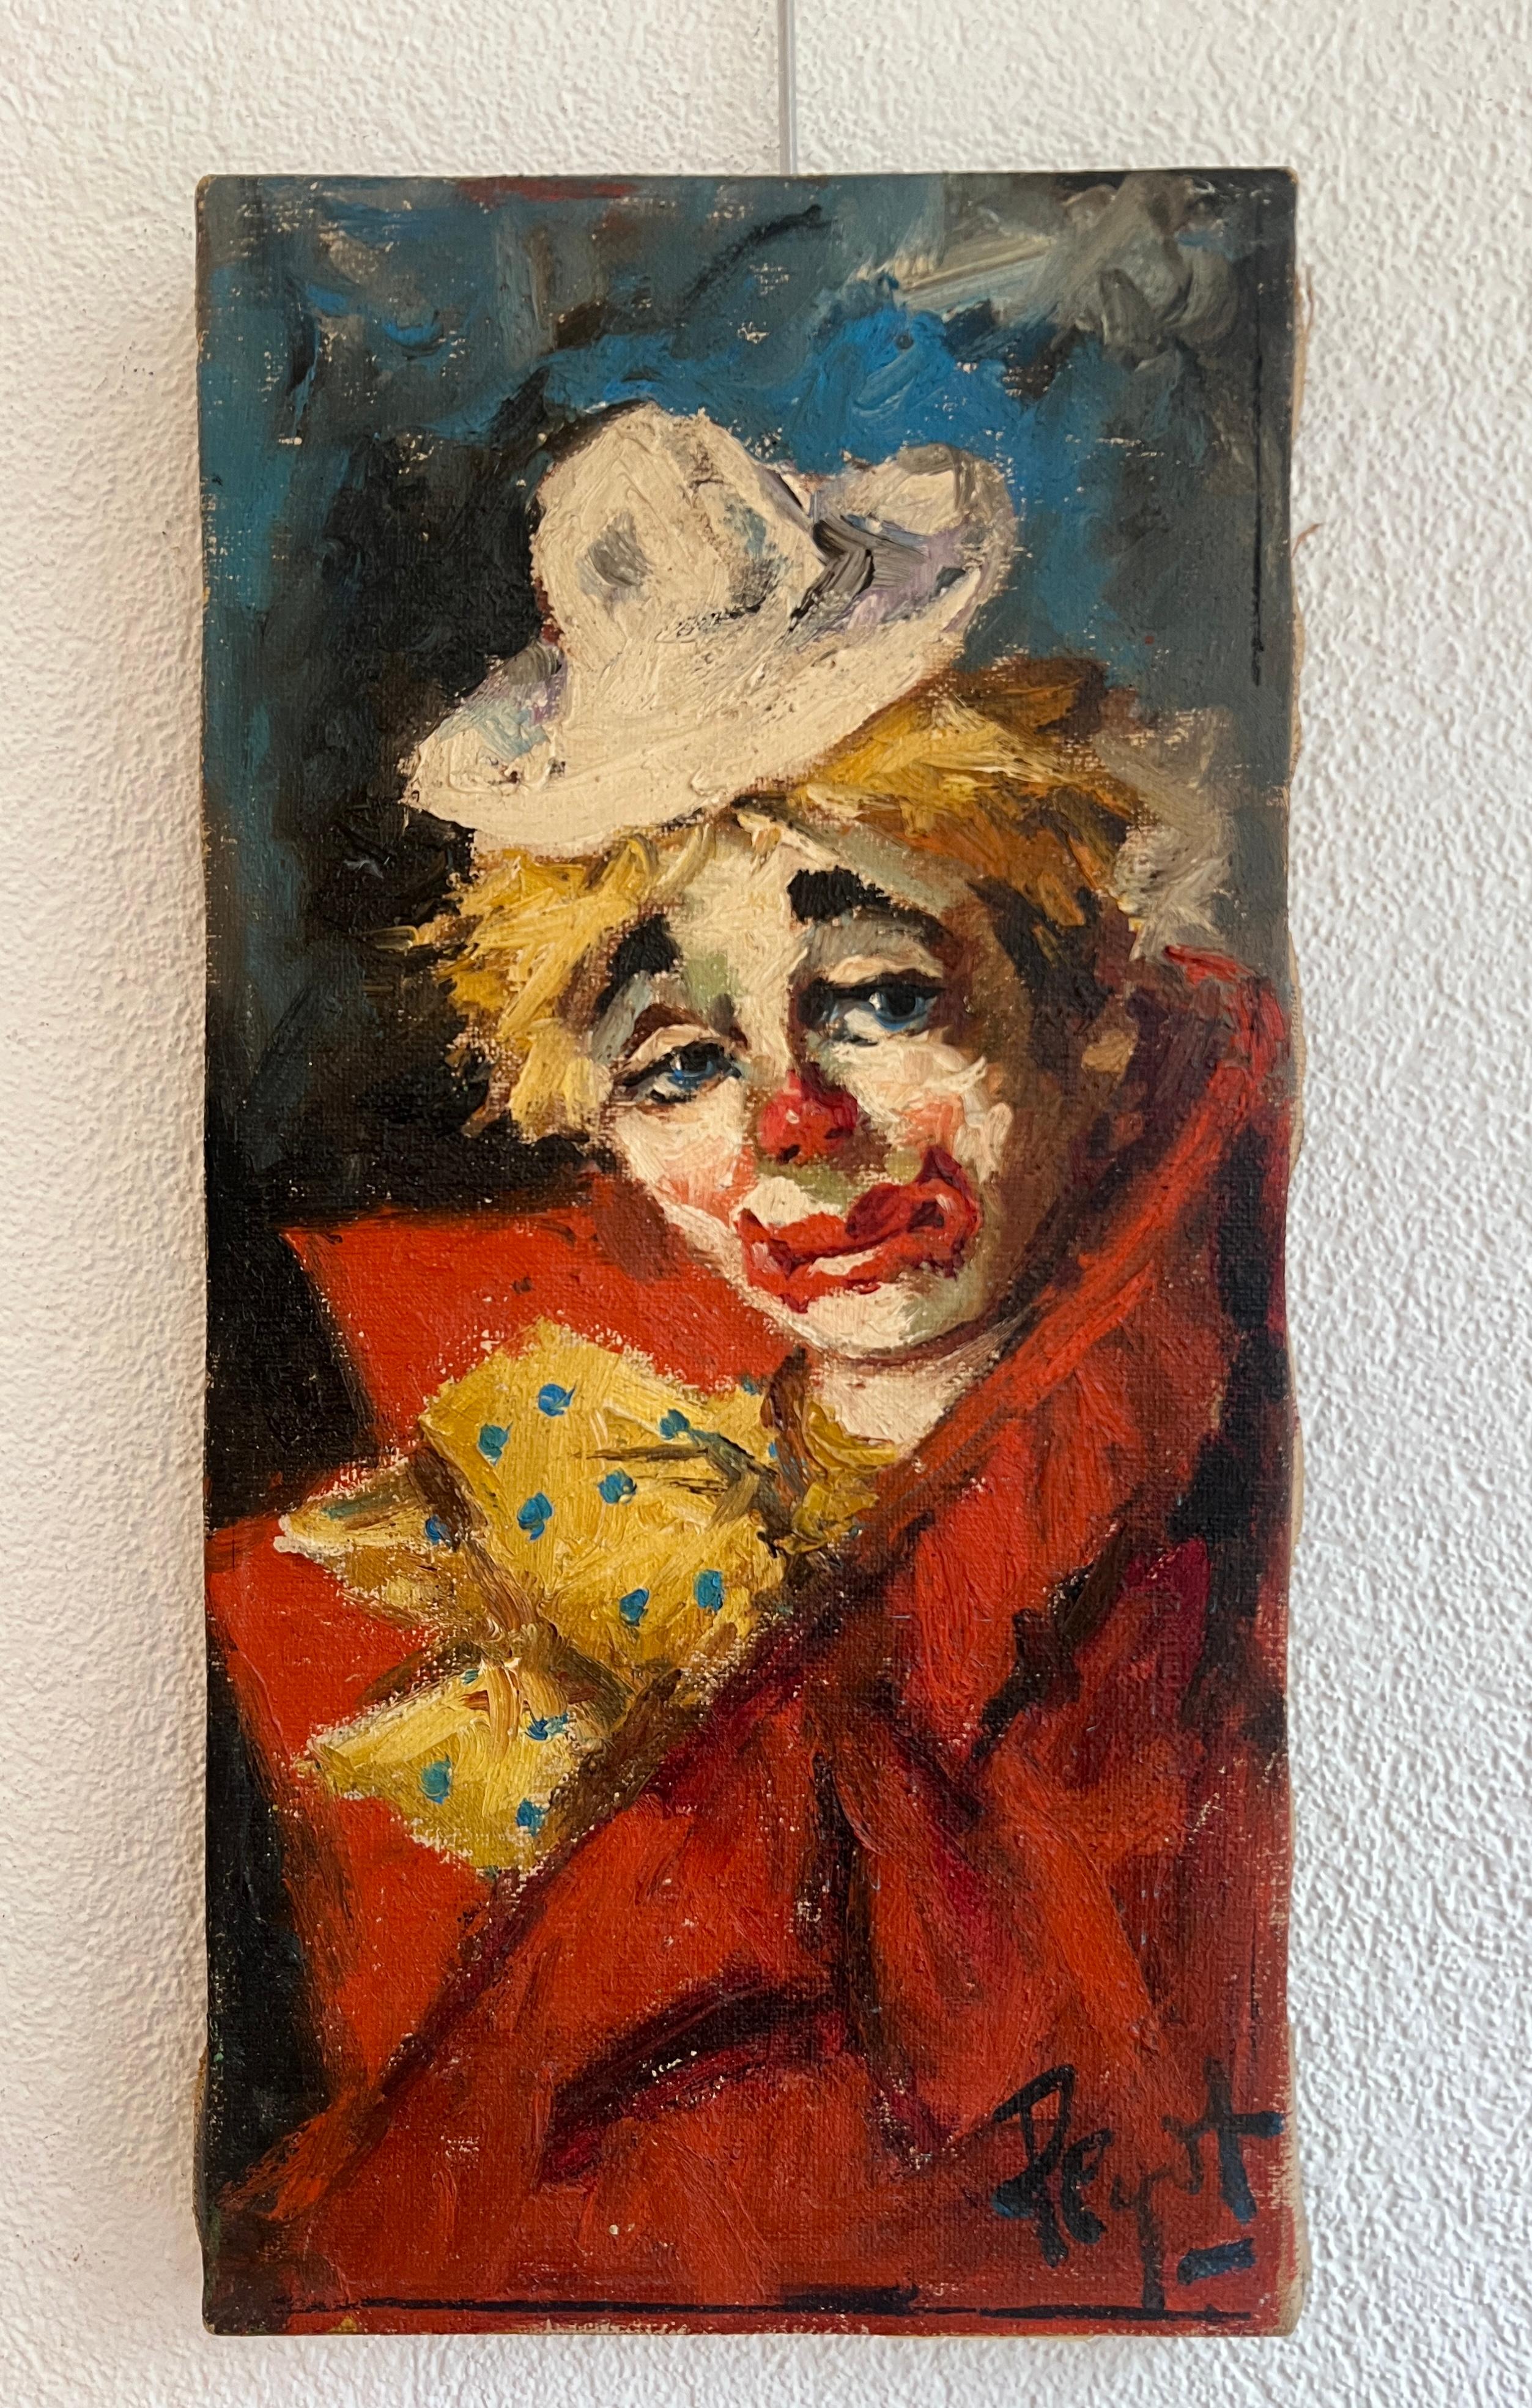 Sad clown - Painting by Peyot